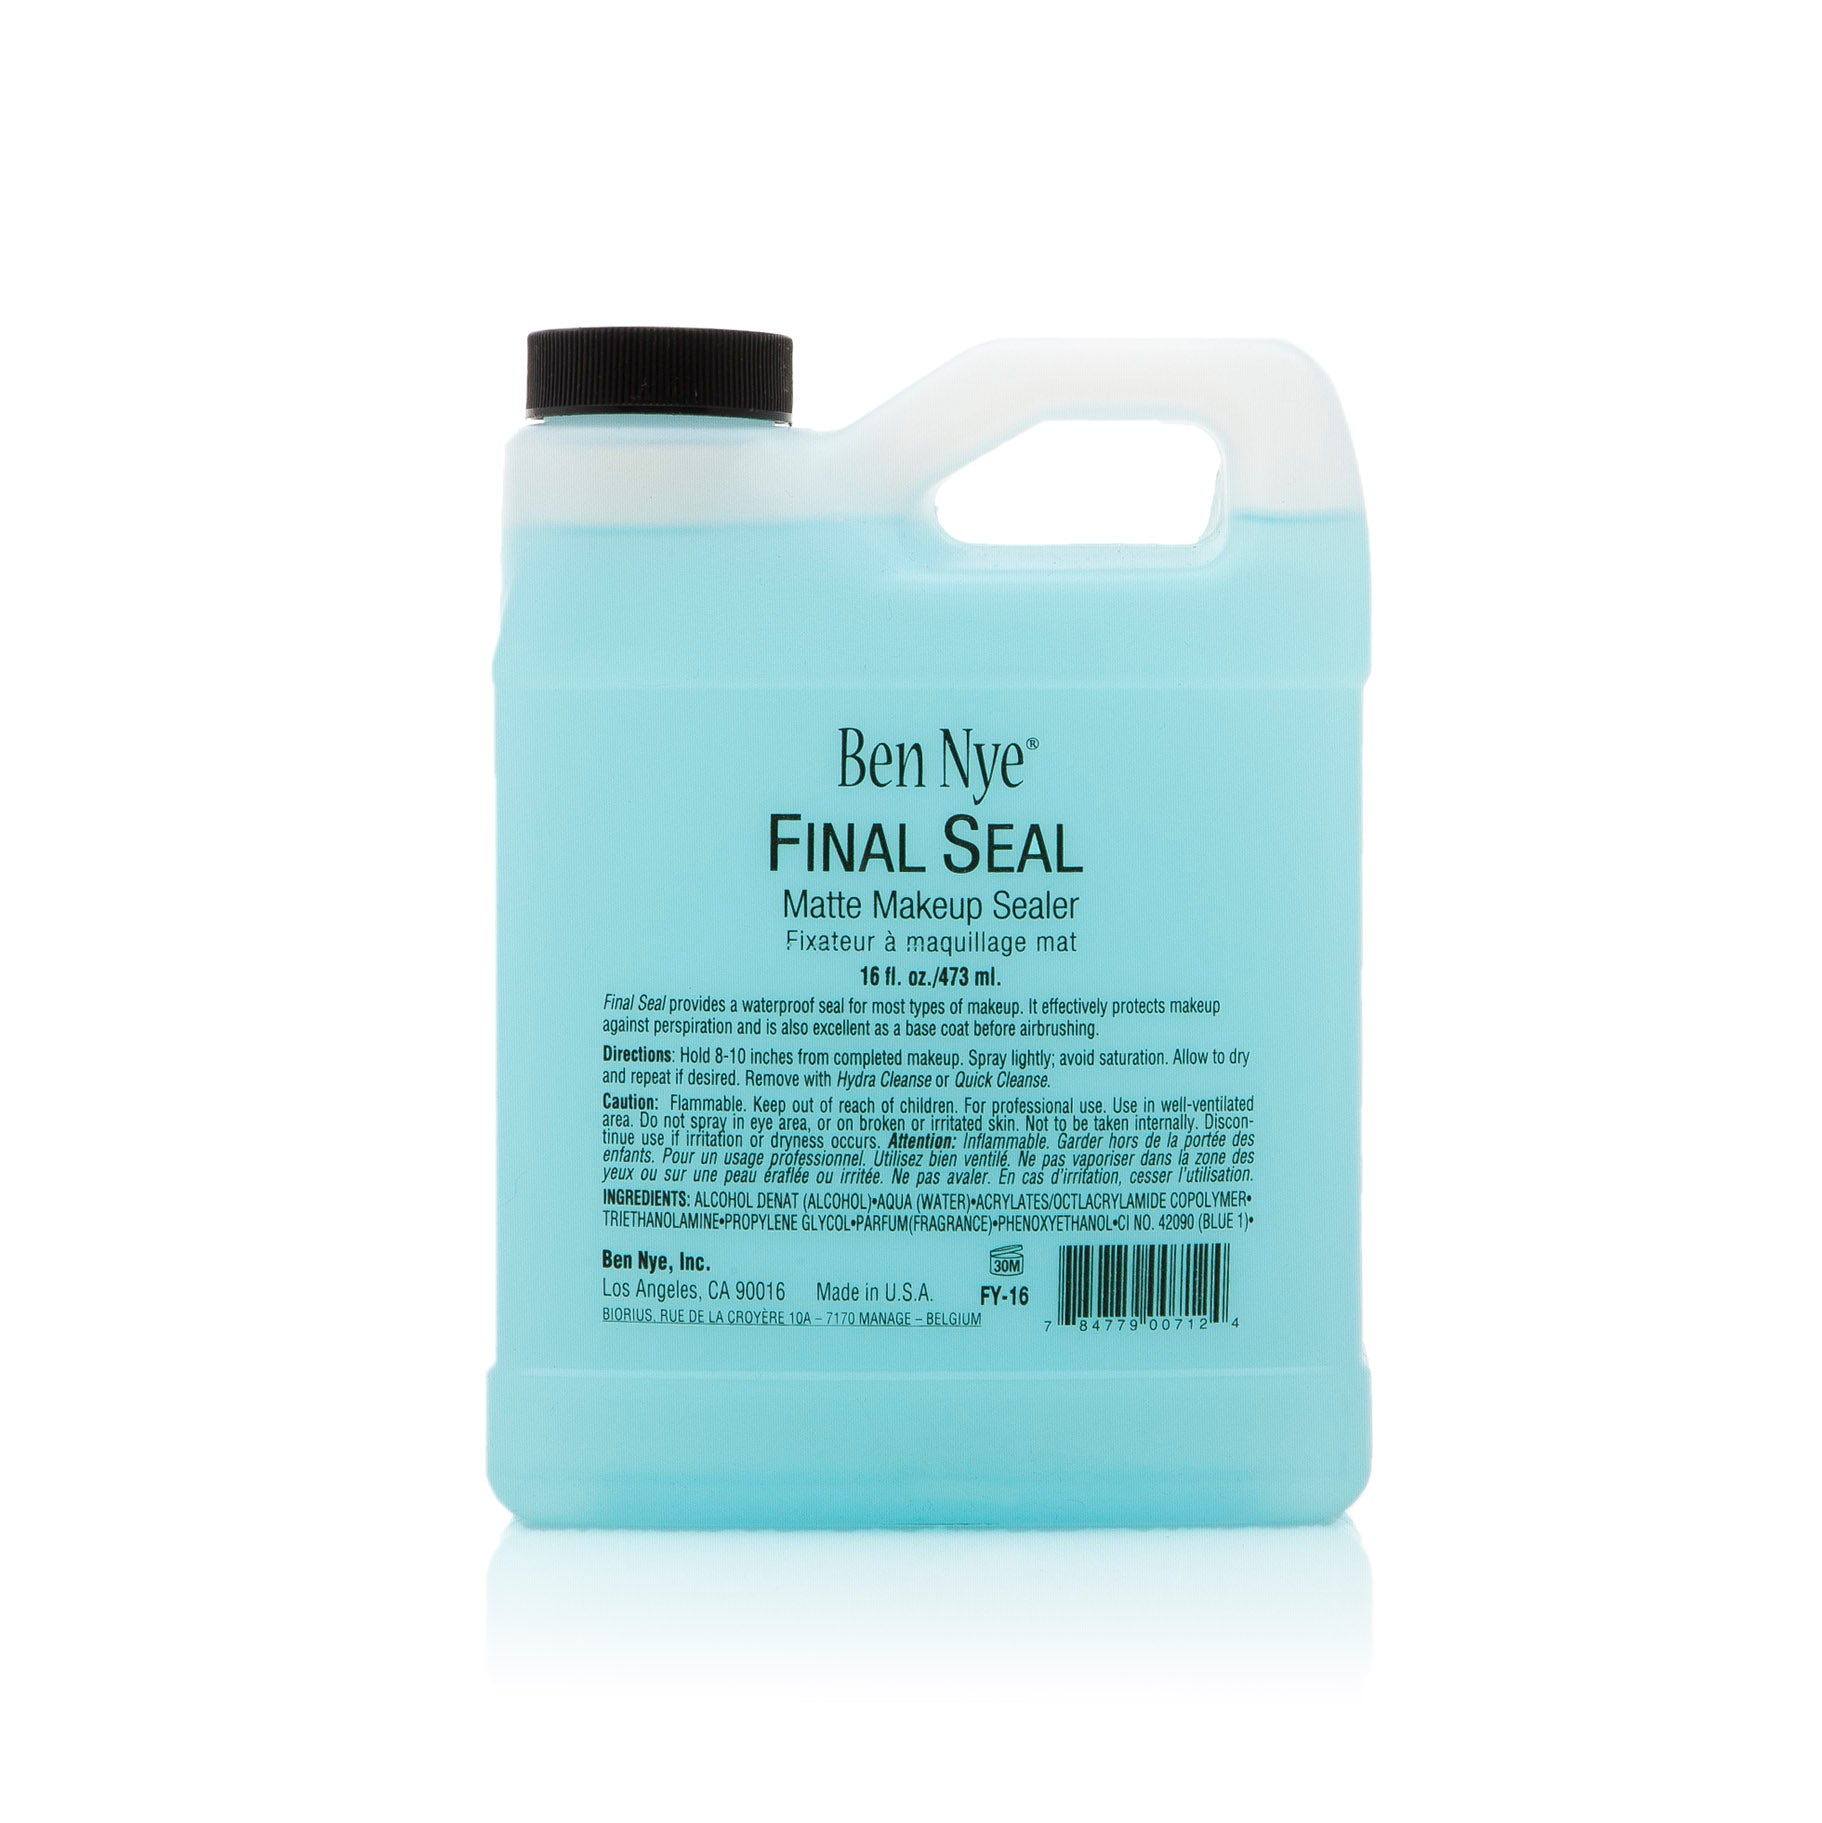 Ben Nye - Final Seal Matte Make-up Sealer – R. Hiscott Beauty